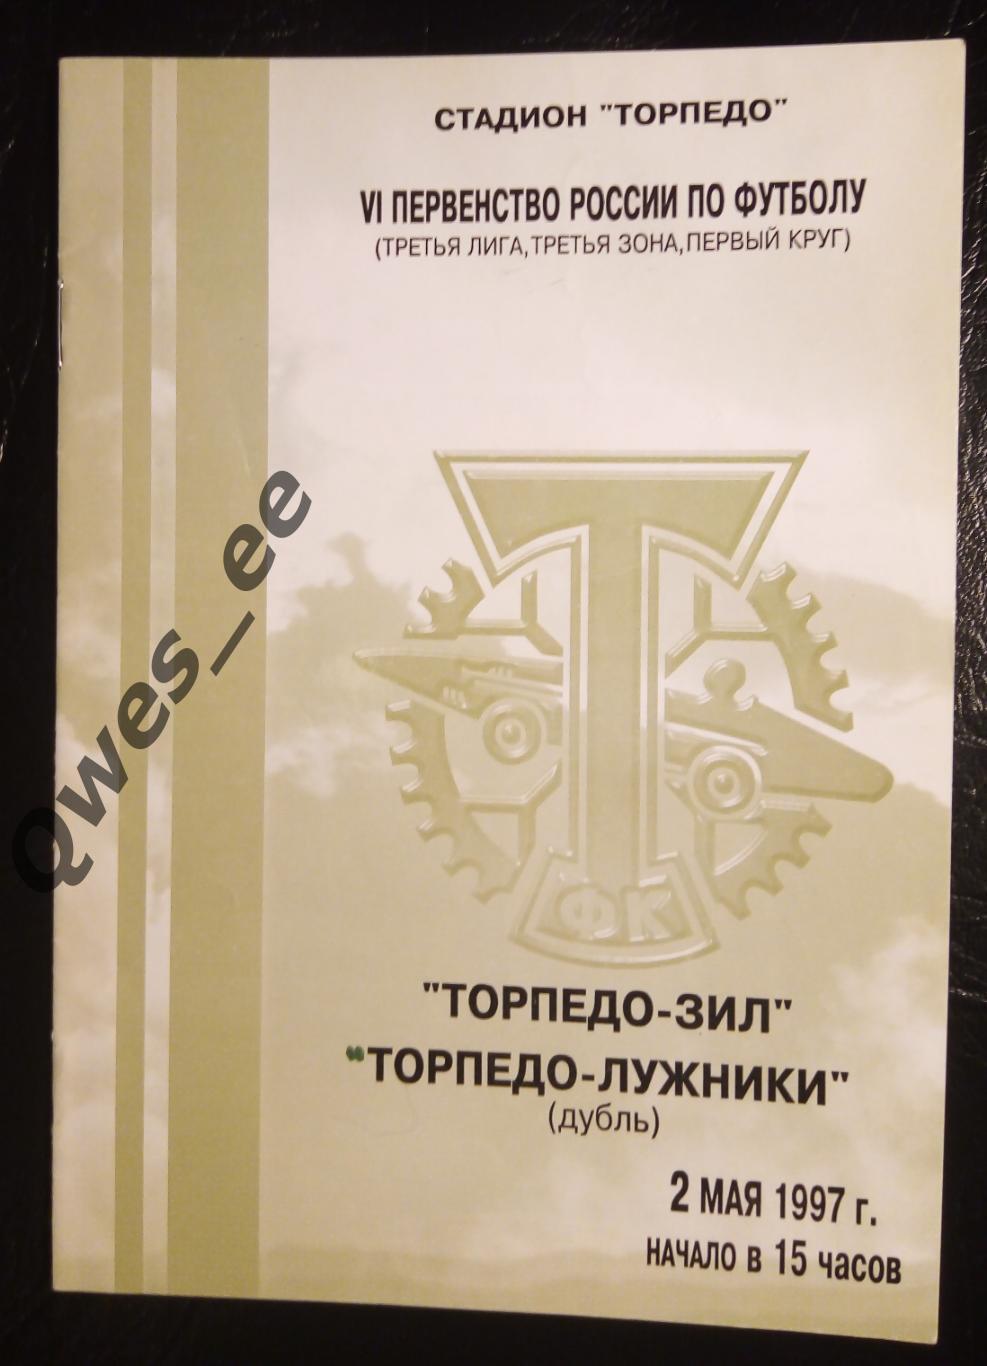 Торпедо-ЗИЛ Москва Торпедо-Лужники дубль 2 мая 1997